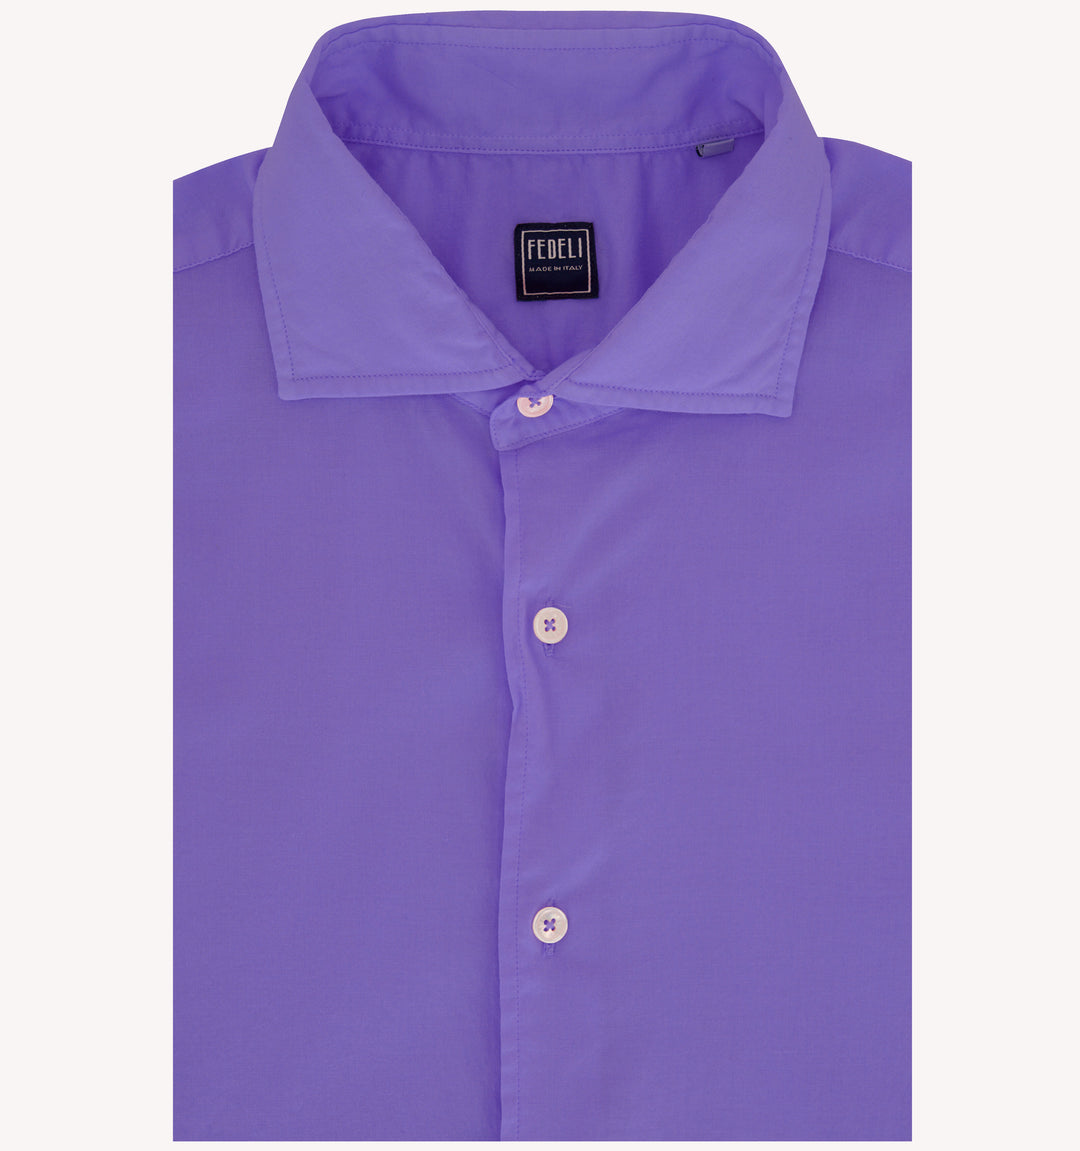 Fedeli Sport Shirt in Dusty Purple